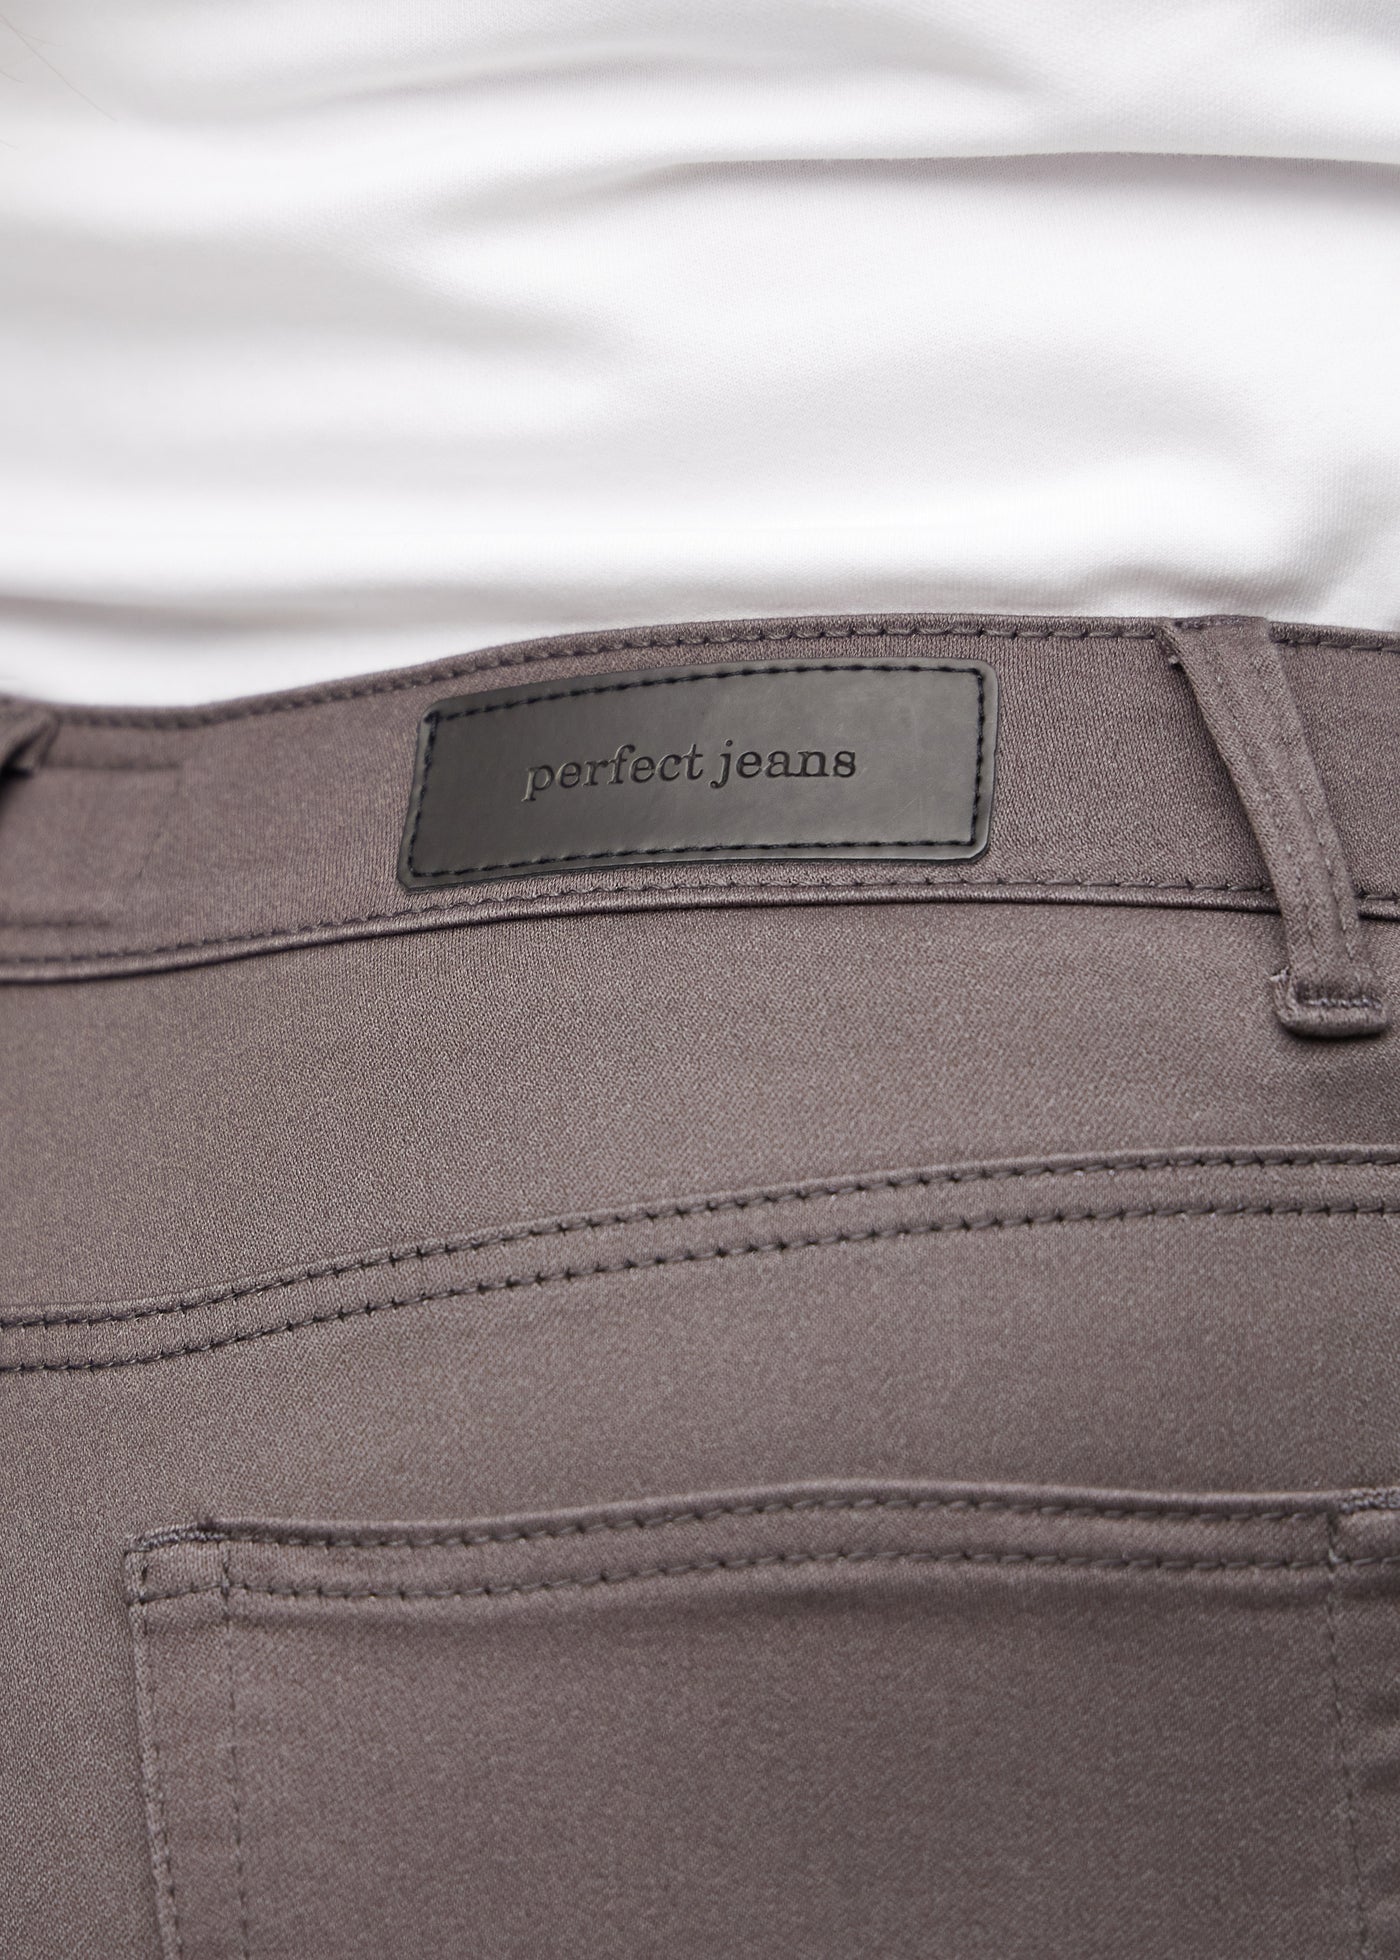 Baglommen på et par gråbrune jeans, hvor man kan se logoet på en plus-size model.